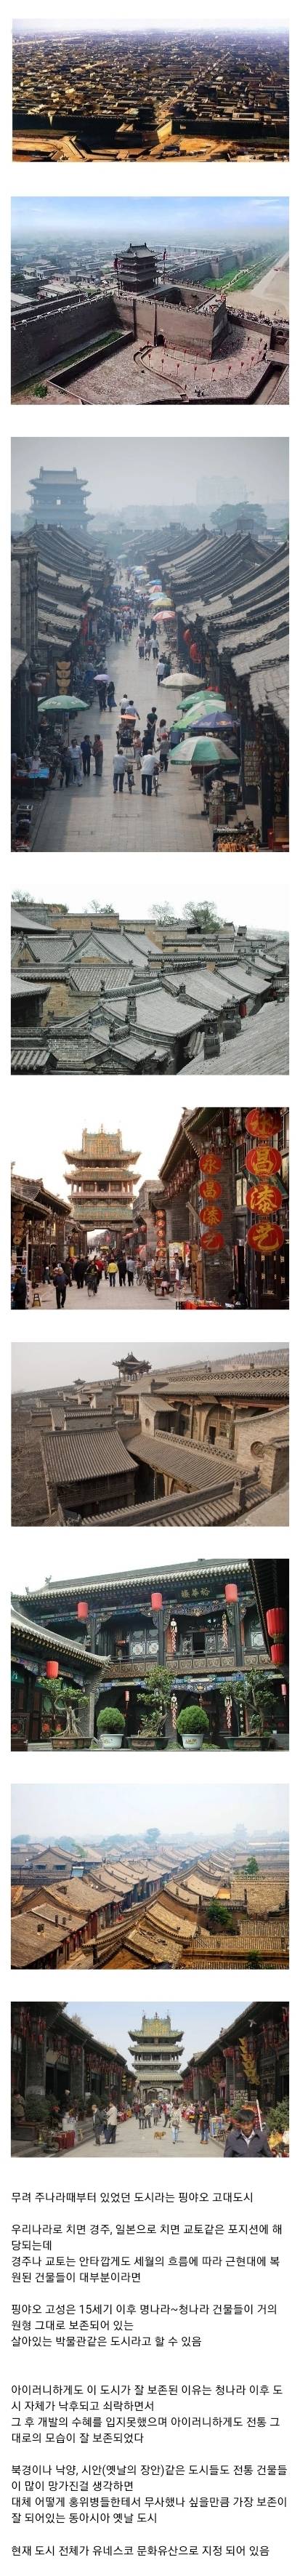 1 동아시아에서 가장 옛날 모습 그대로 보존이 잘 되어있는 전통 도시.jpg